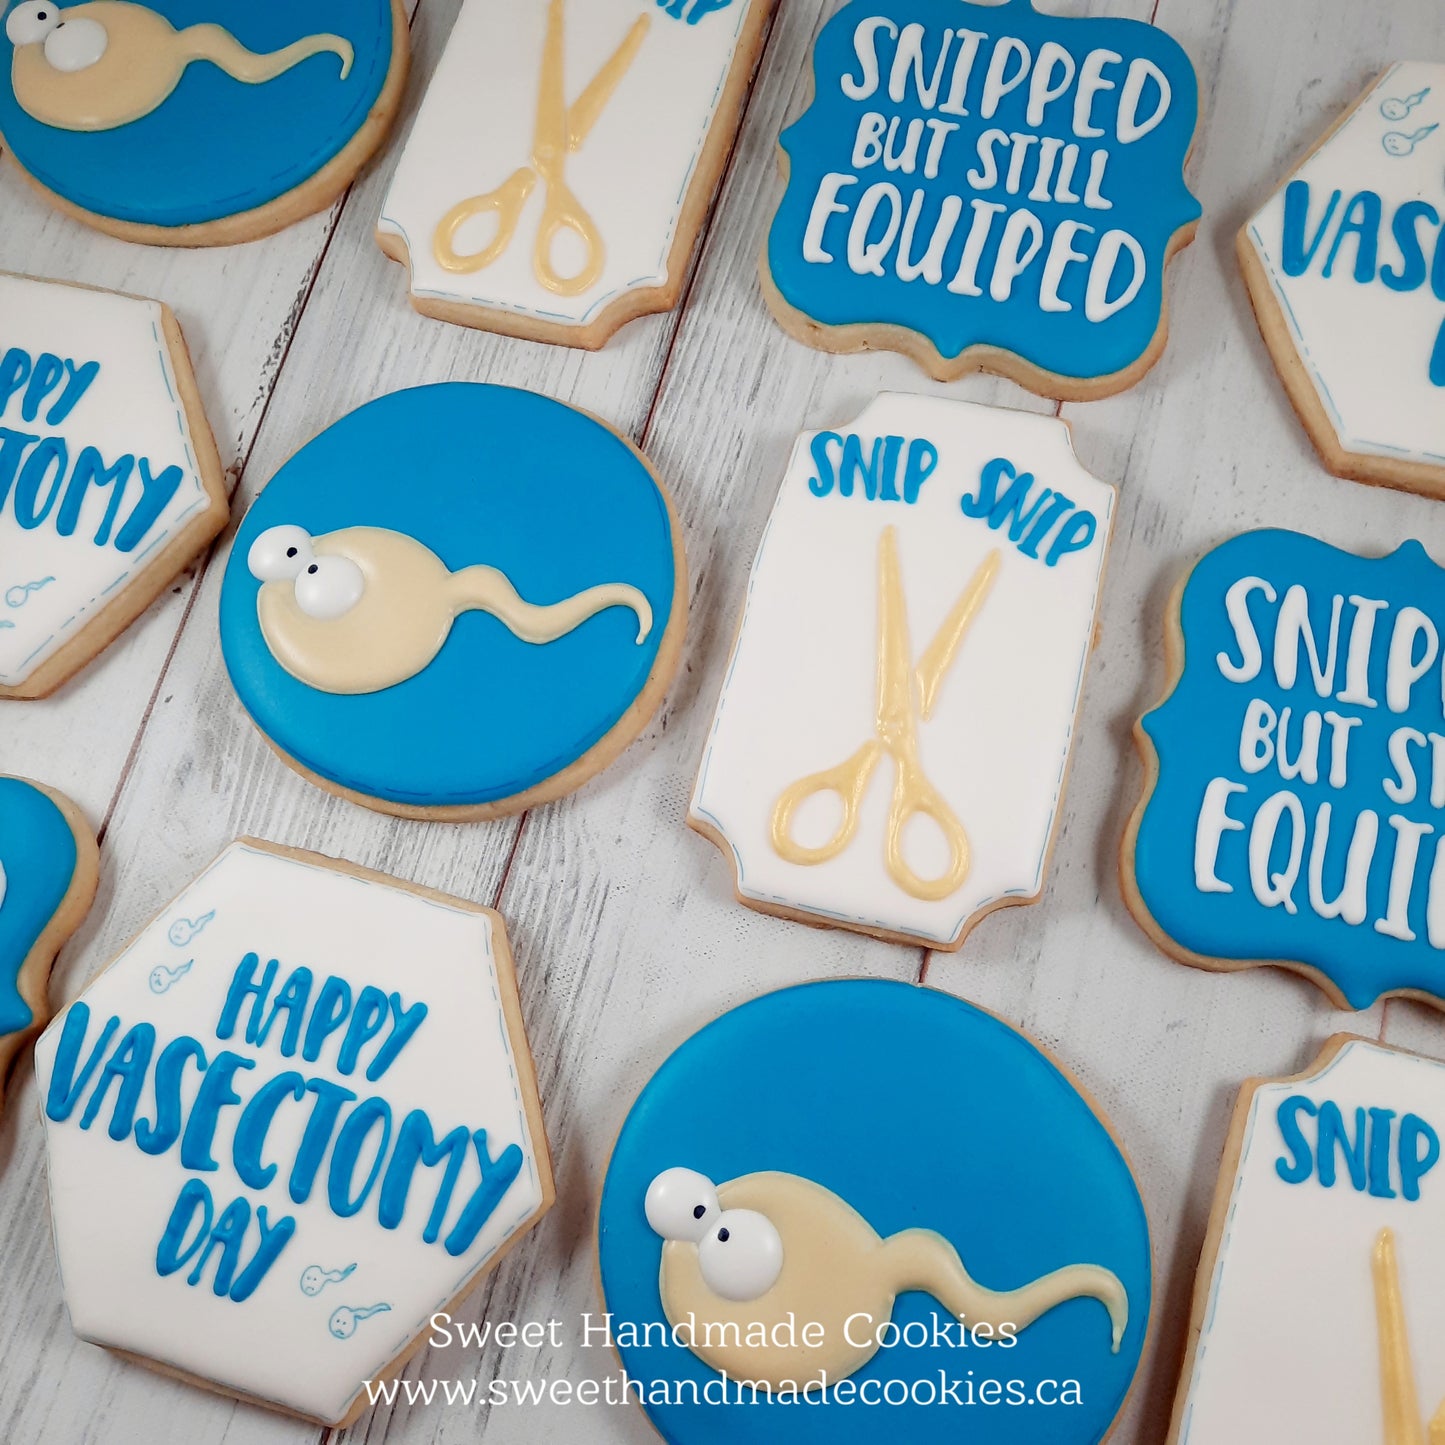 Vasectomy Cookies - Happy Vasectomy Day